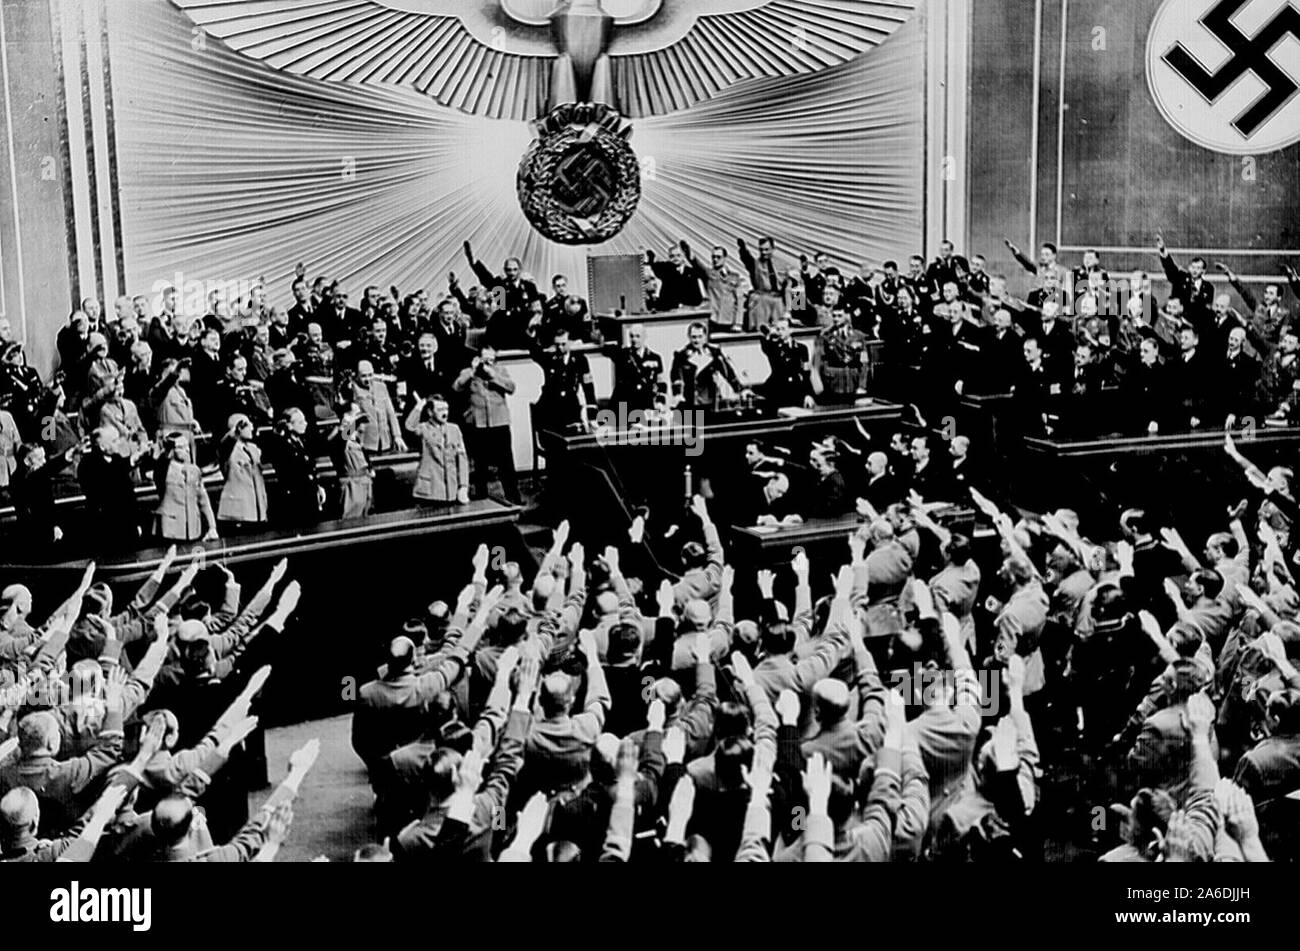 Hitler akzeptiert die ovationen der Reichstag nach der Bekanntgabe der 'friedlichen' Erwerb von Österreich. Es gesetzt, die Bühne zu Anhang der Tschechoslowakischen Sudetenland, die zu einem Großteil von einer deutschsprachigen Bevölkerung bewohnt. Berlin, März 1938 Stockfoto